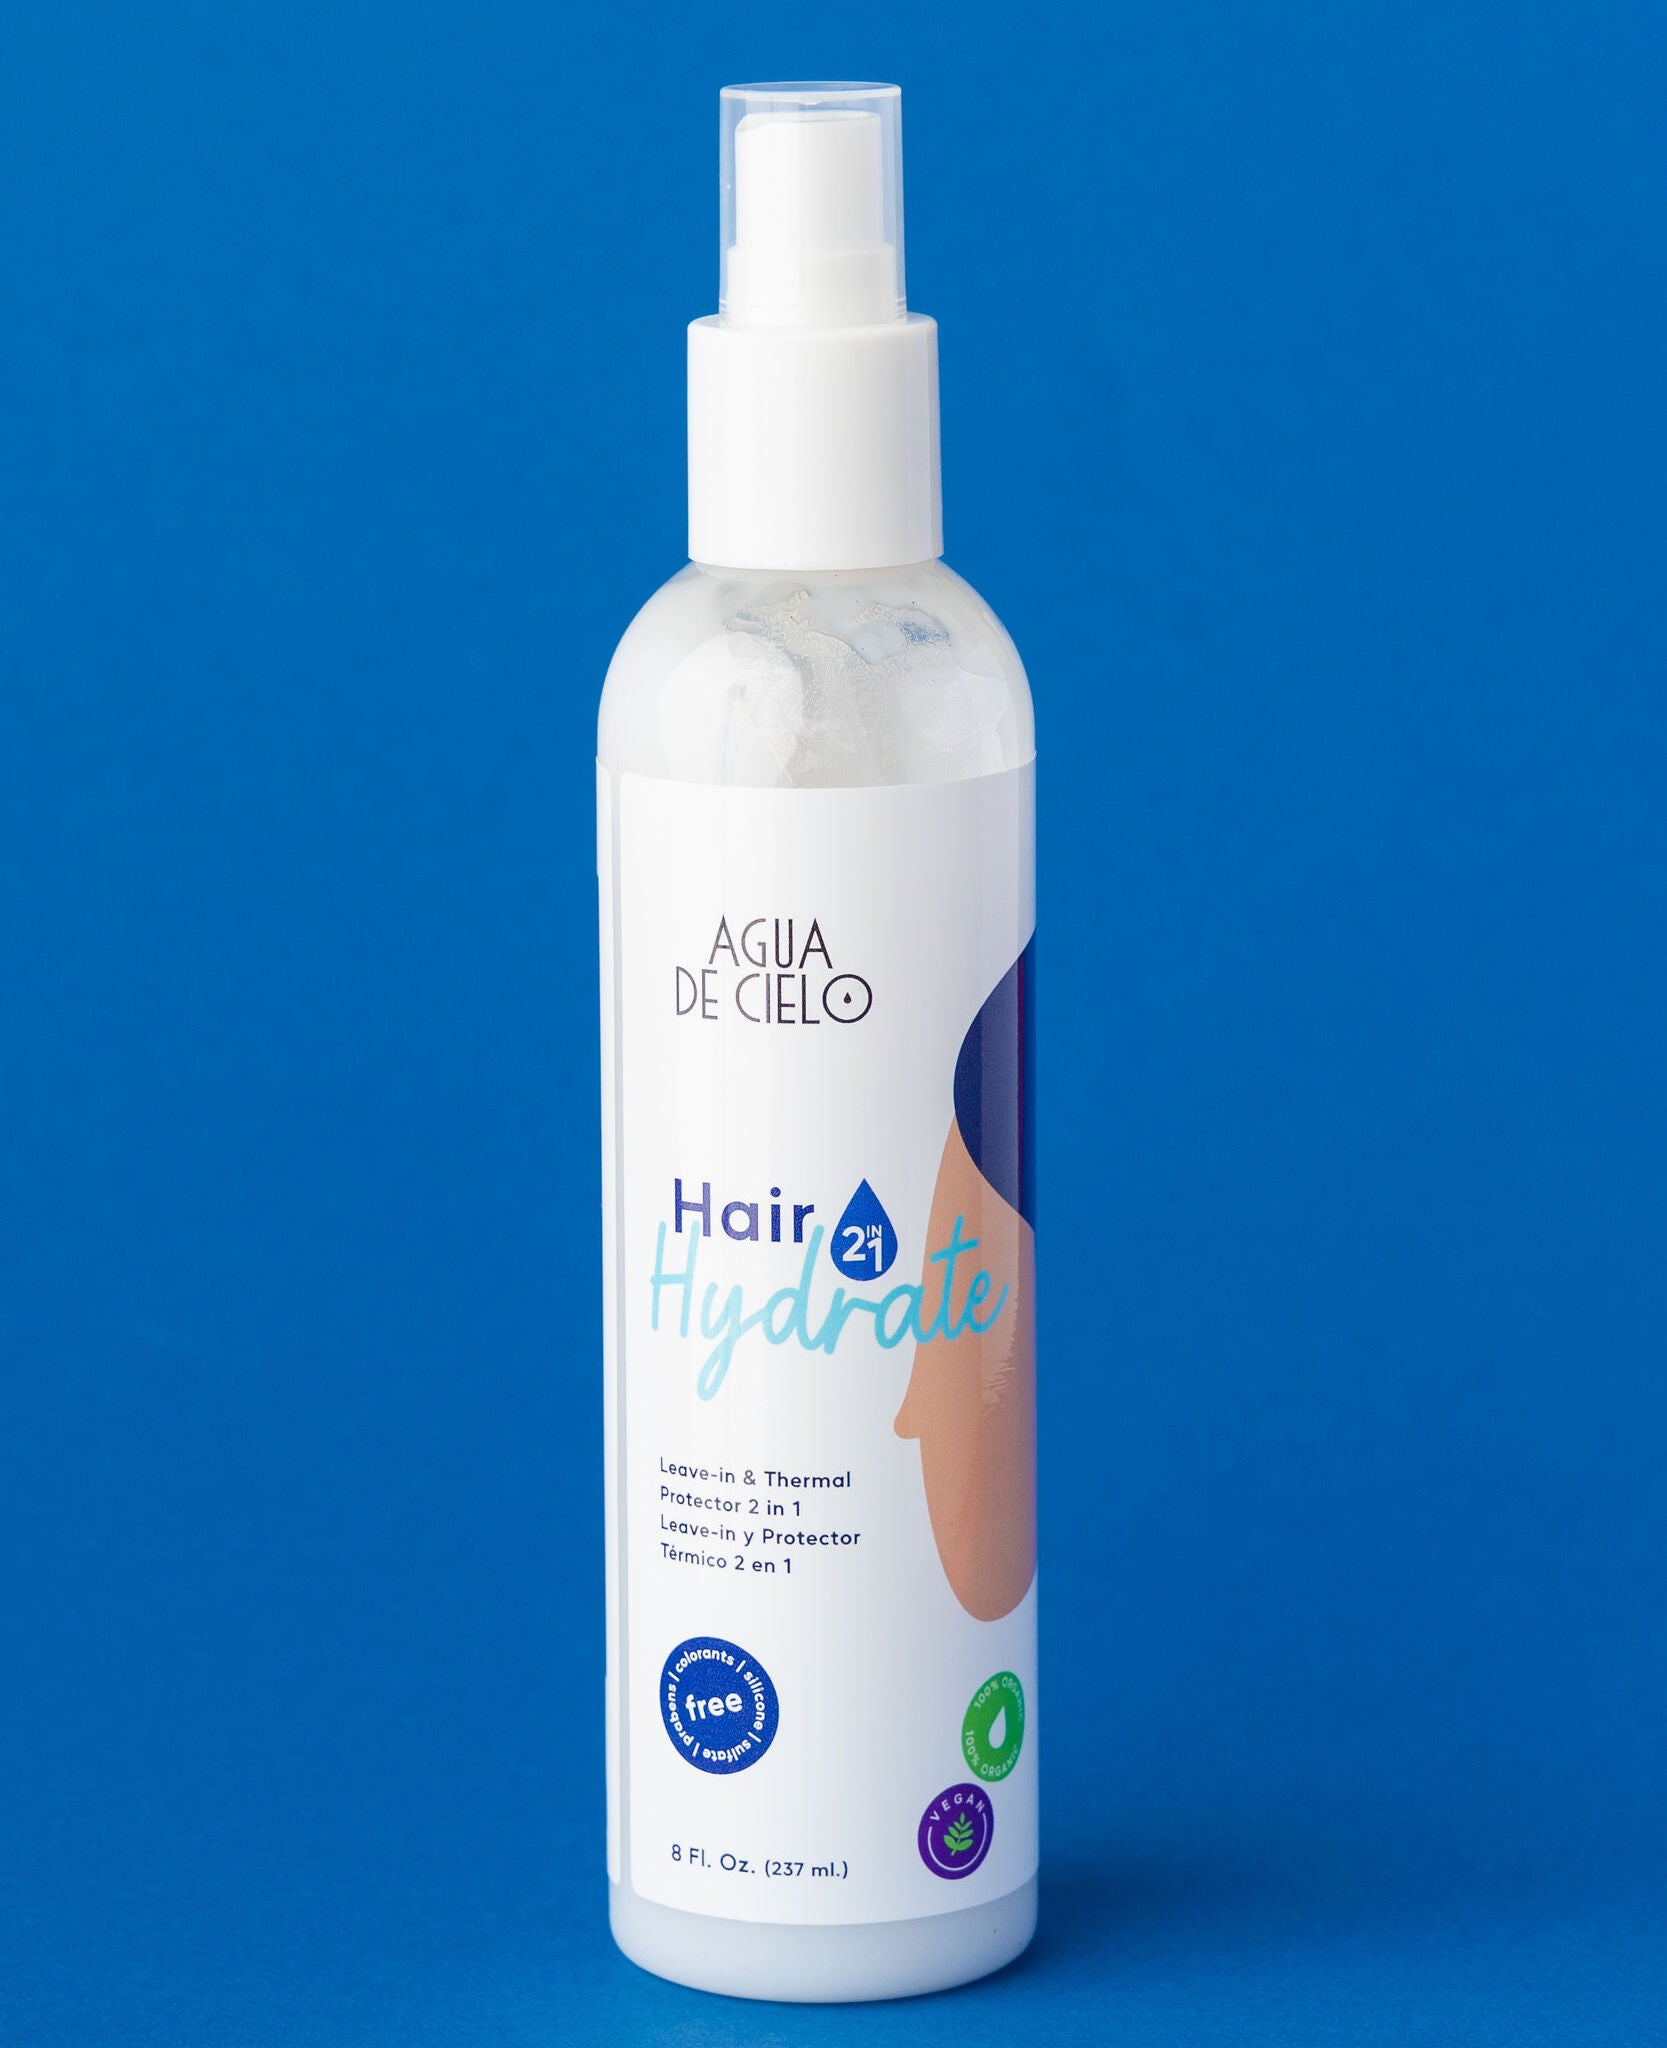 hair hydrate heat protection spray for hair